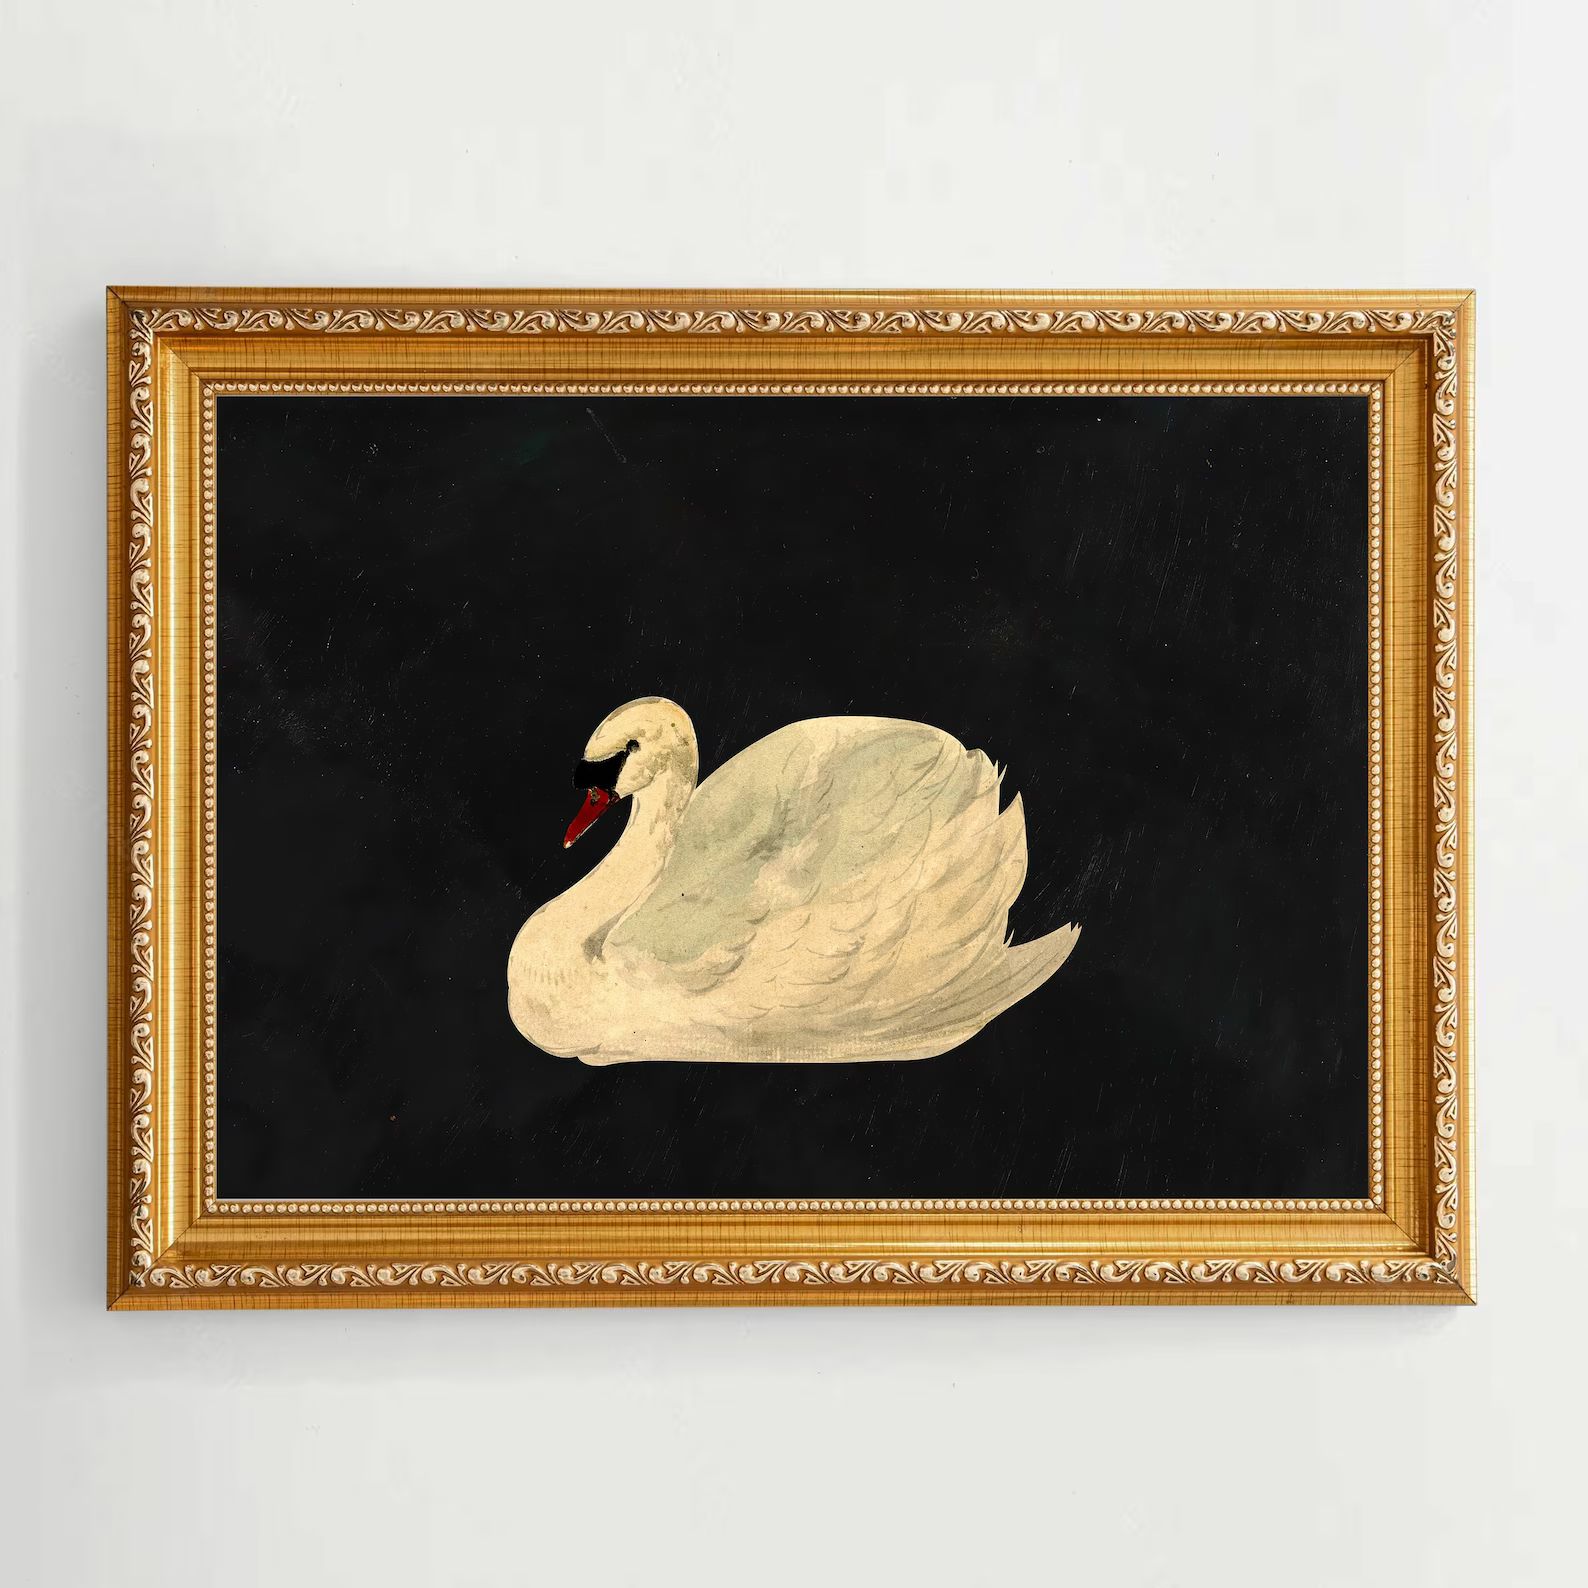 Aert Schouman knobbelzwaan mute Swan on Antique, Weathered Black Background Unframed Fine Art Pri... | Etsy (US)